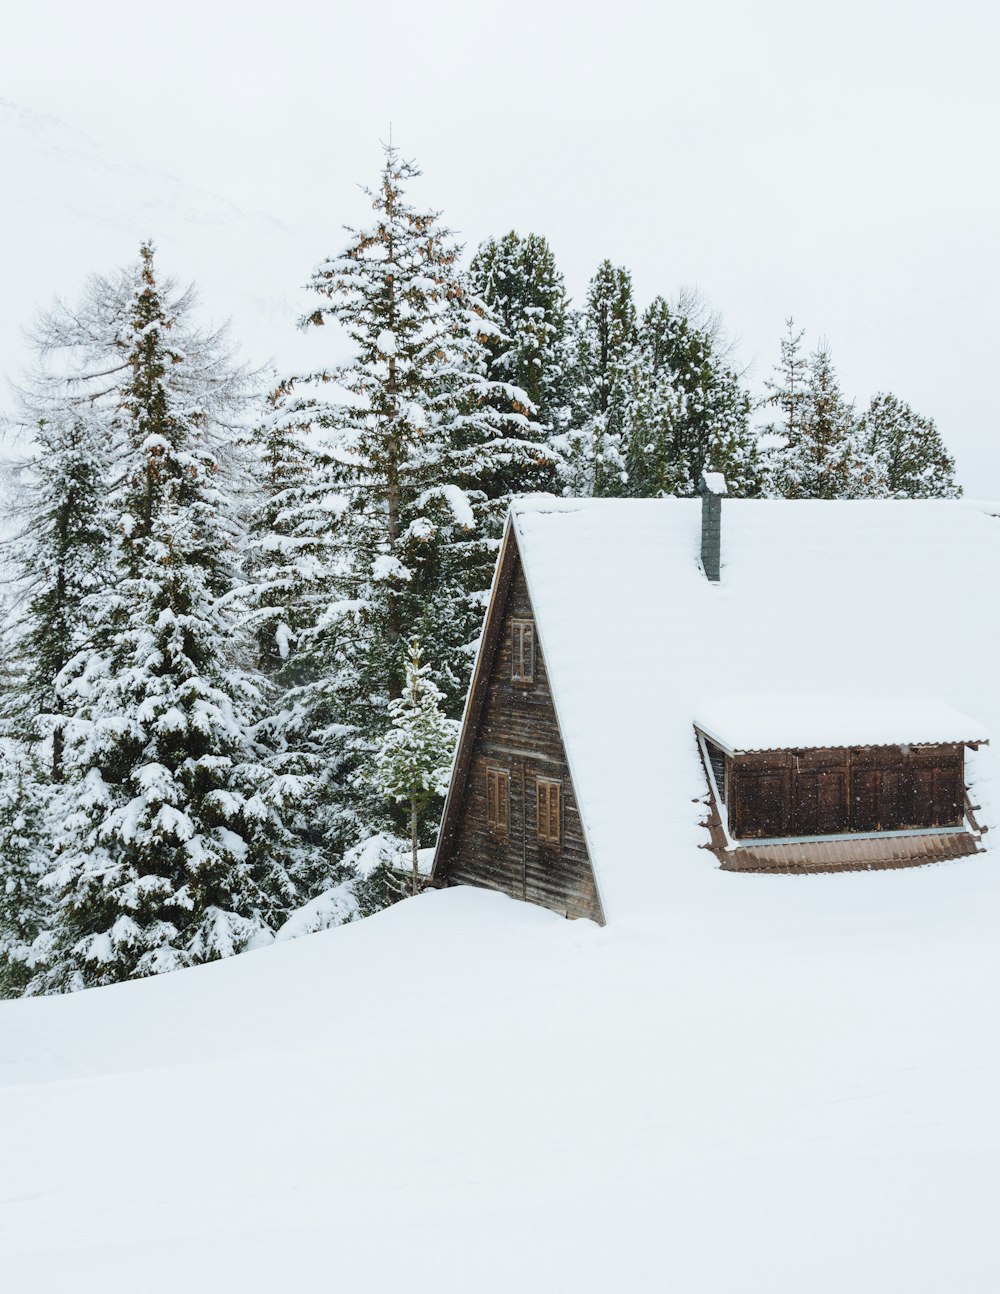 cabina marrone coperta di neve accanto agli alberi durante il giorno